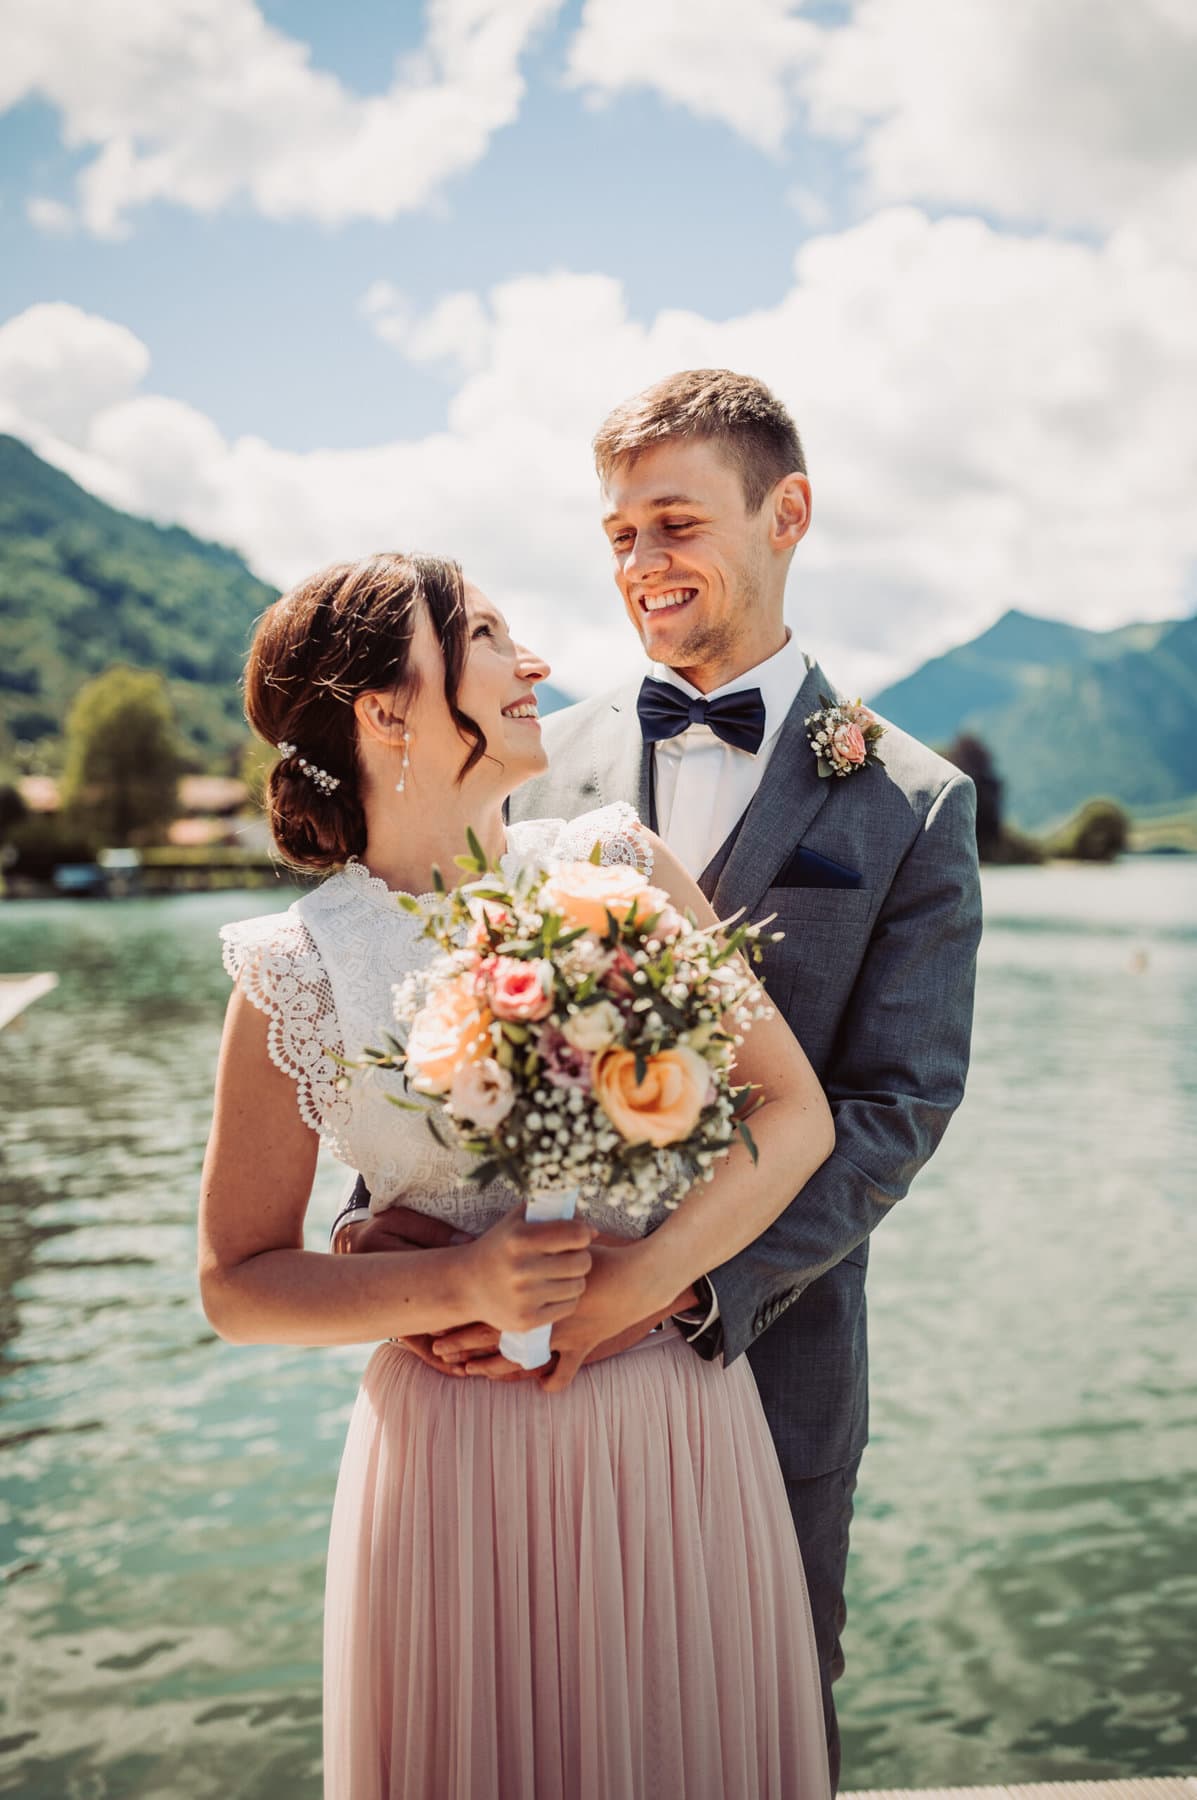 Das Hochzeitsshooting in Oberbayern am Schliersee. Das Brautpaar steht auf einem Steg und sehen sich in die Augen.